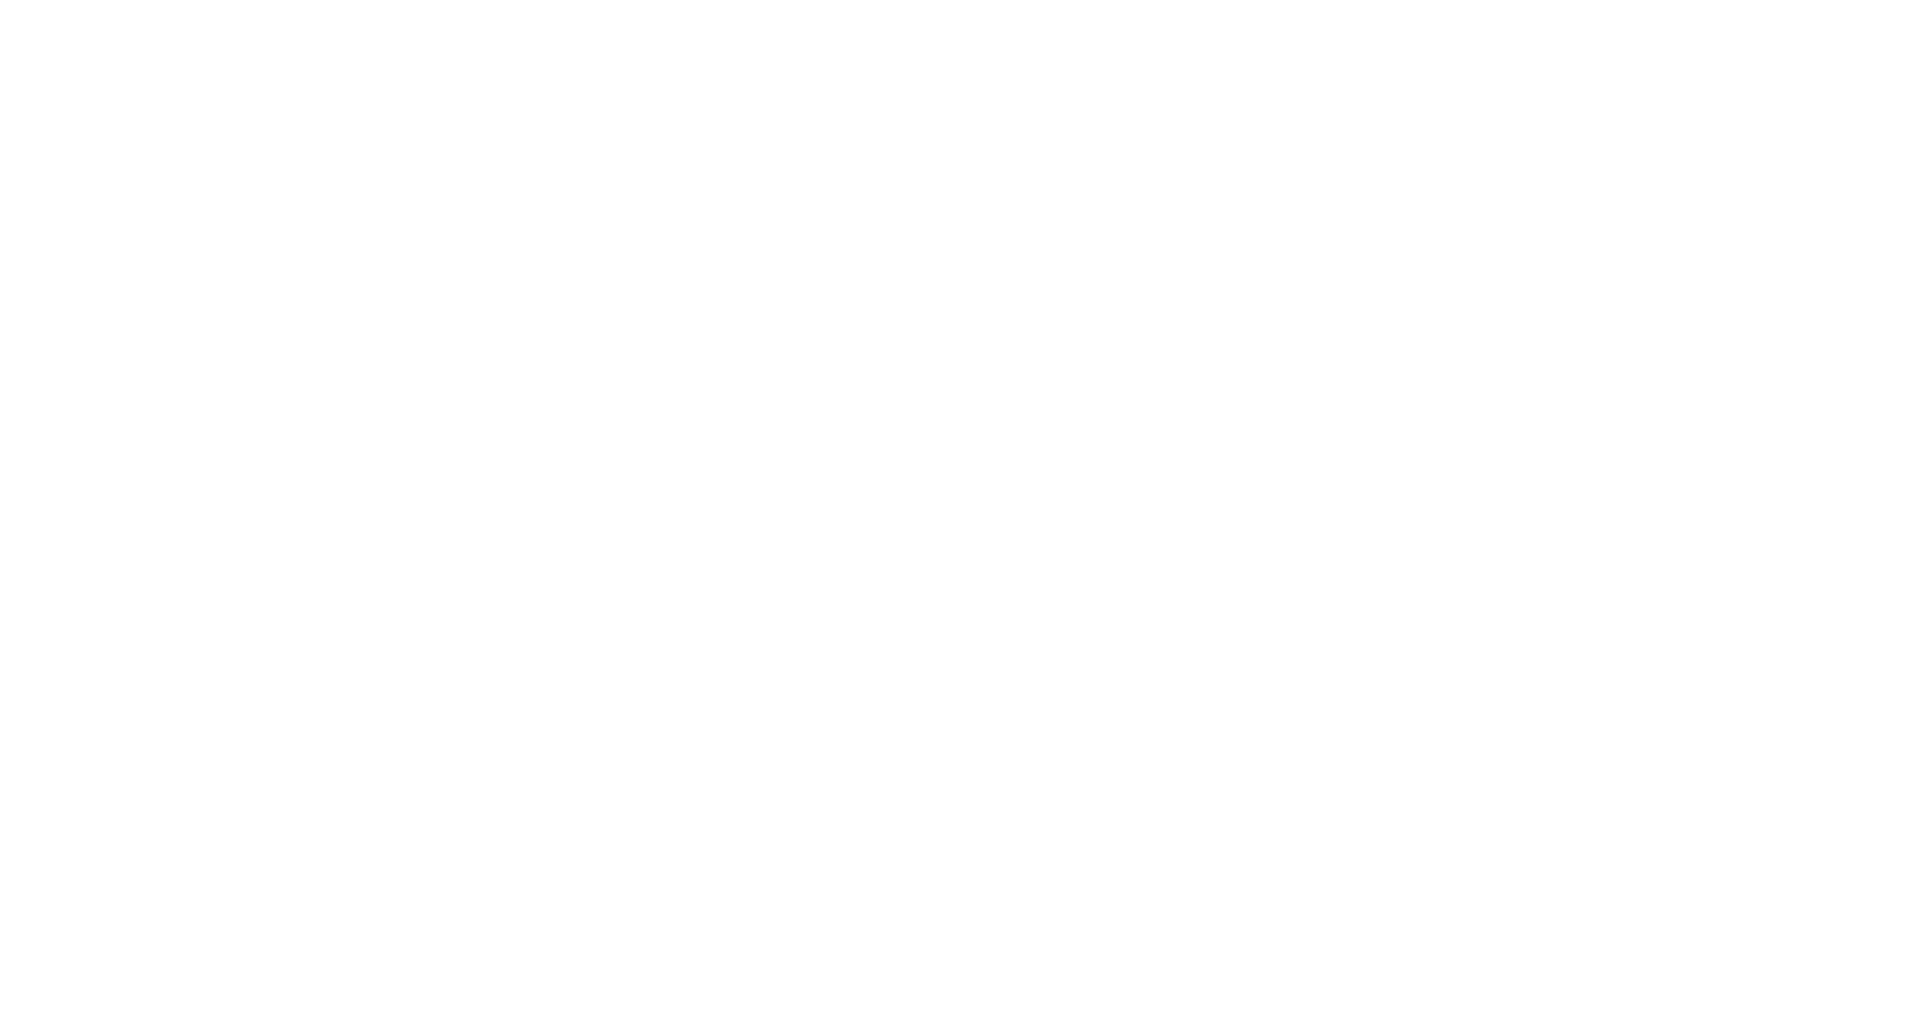 KAROSSO OFICIAL